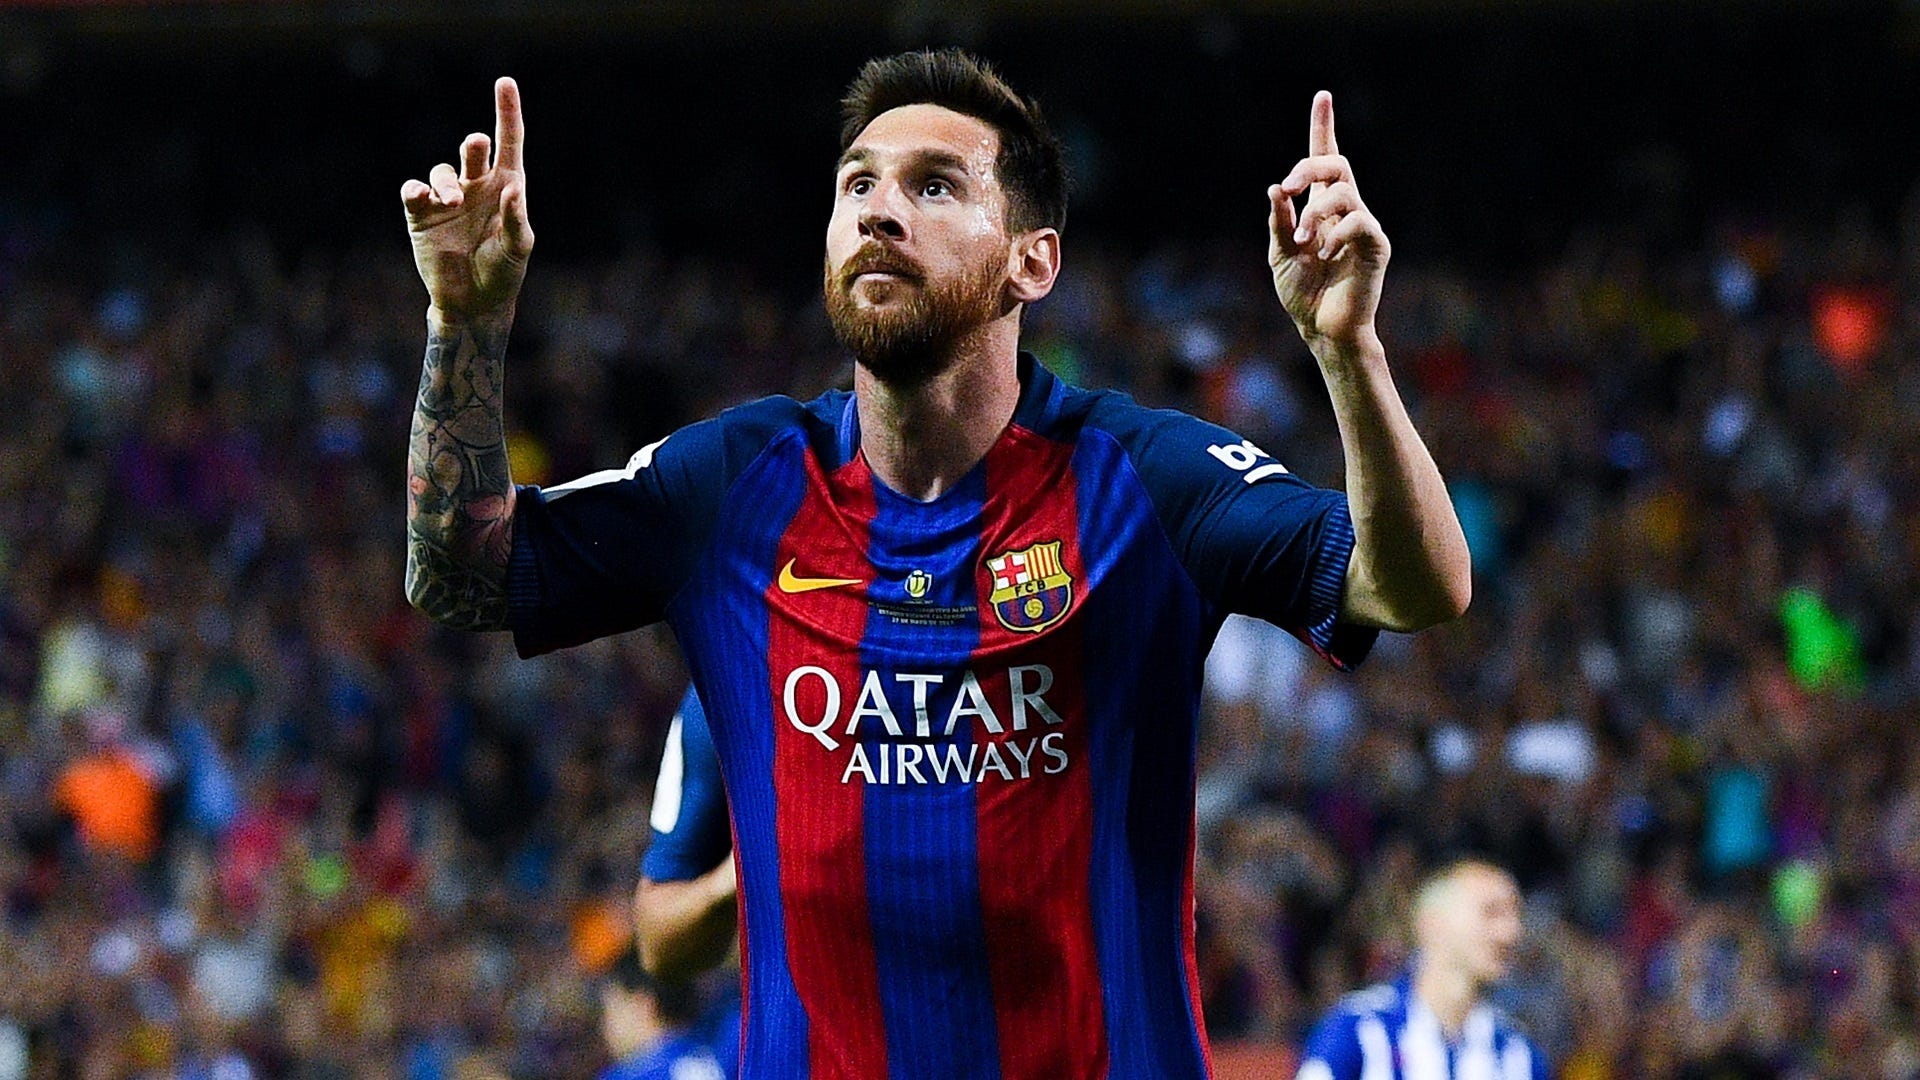 Lionel Messi - Cùng tìm hiểu thêm về cuộc đời huyền thoại của thế giới bóng đá với những hình ảnh và thông tin về Messi. Làm nổi bật niềm đam mê bóng đá với một trong những cầu thủ xuất sắc nhất thế giới.